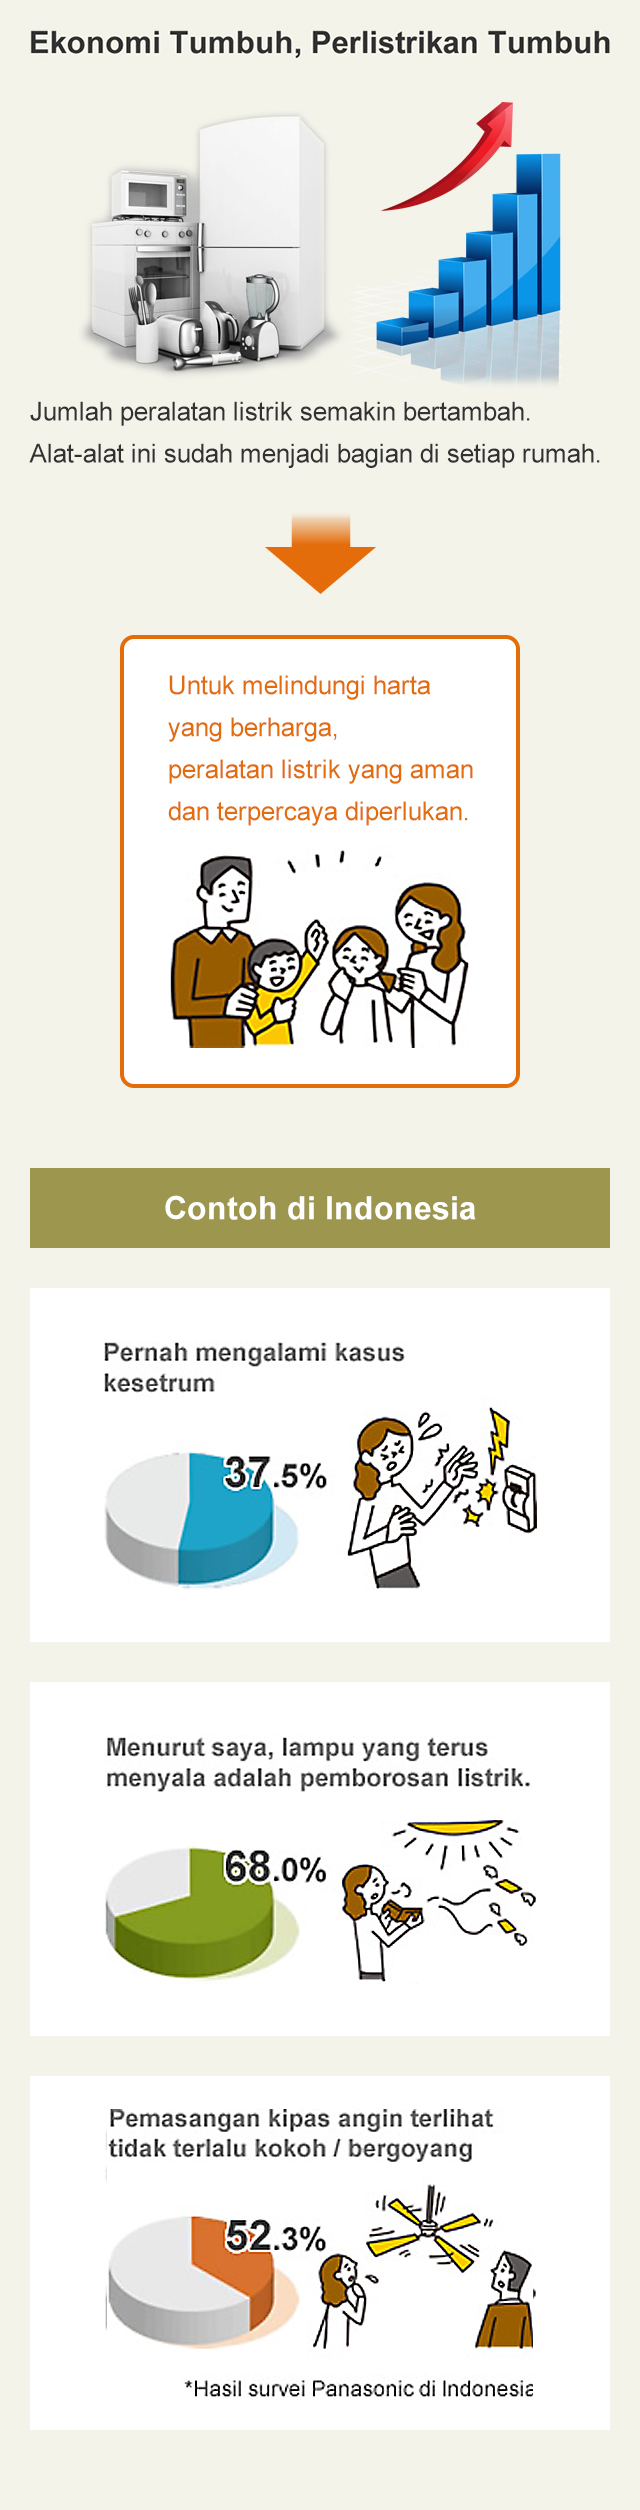 Ekonomi Tumbuh, Perlistrikan Tumbuh, Contoh di Indonesia